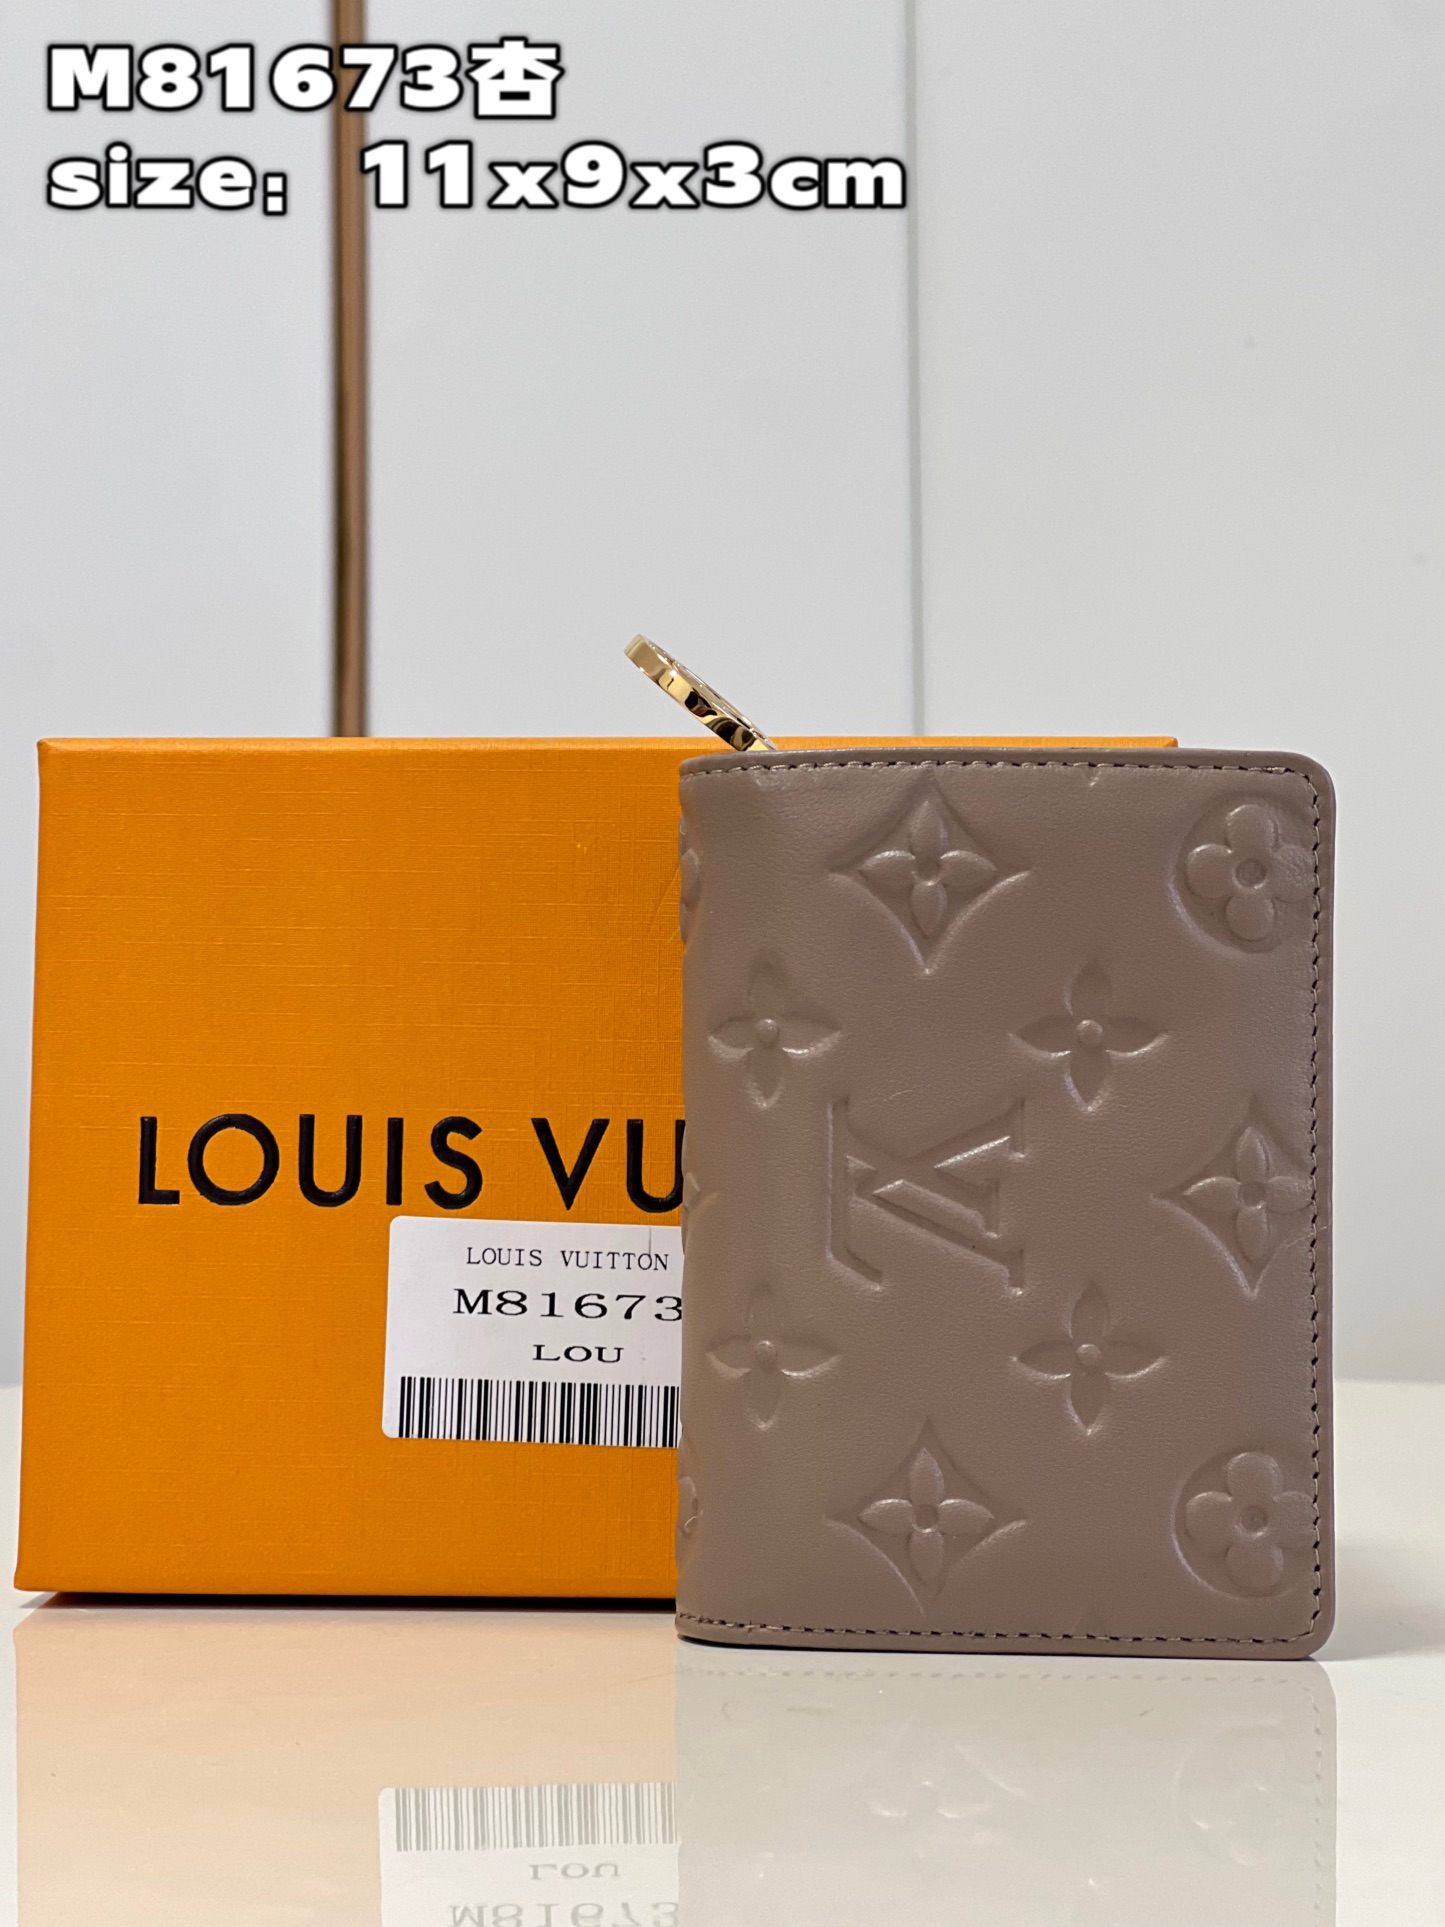 Louis Vuitton LV Coussin Wallet Apricot Color Sheepskin M81673